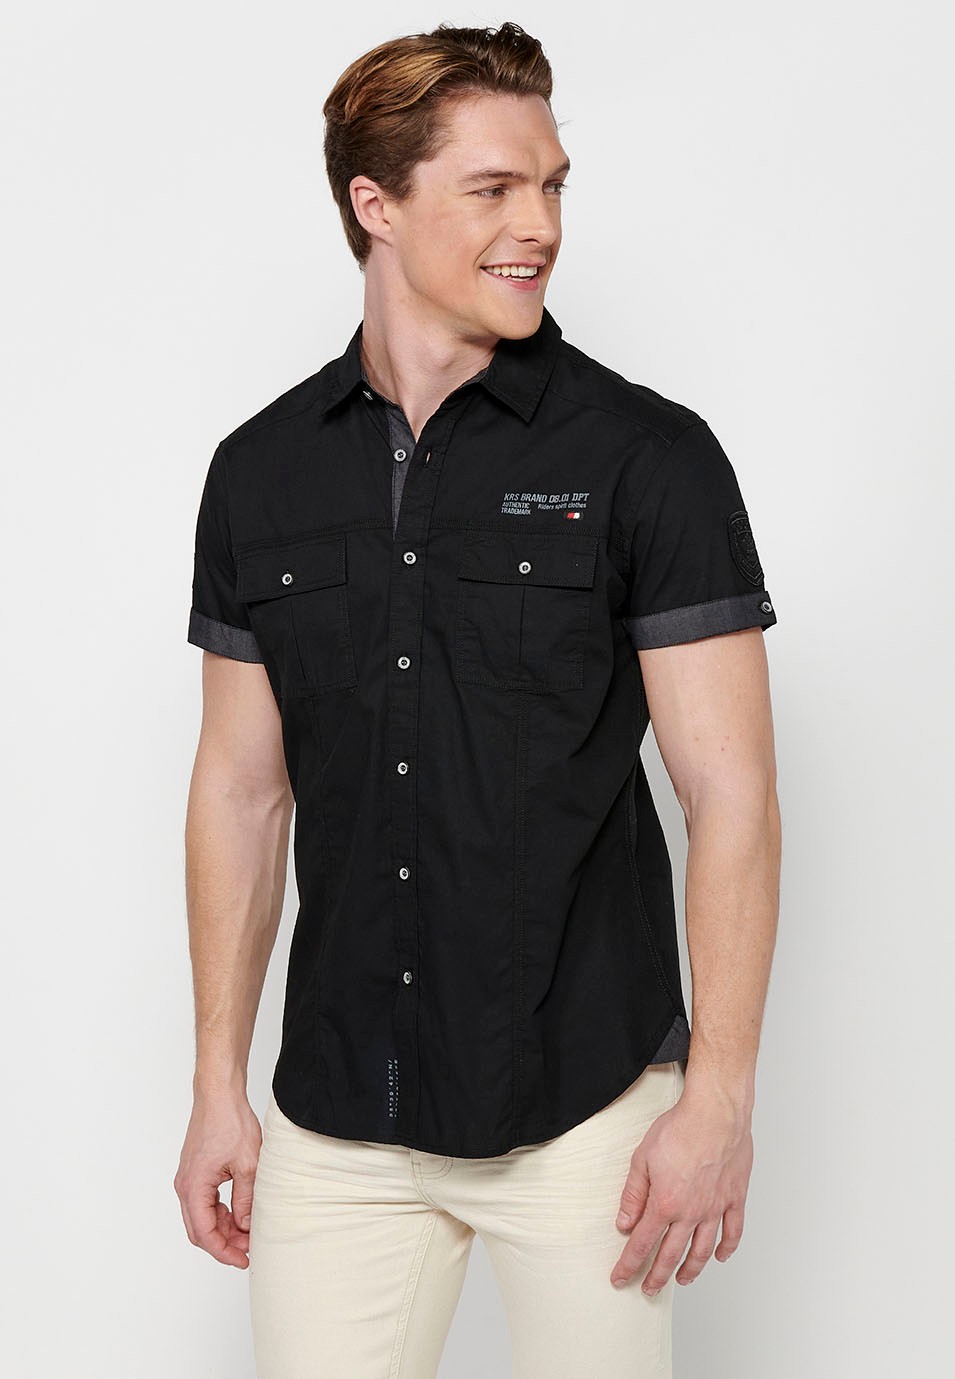 Camisa de manga corta de Algodón con Cierre delantero con botones y Bolsillos delanteros con solapa de Color negro para Hombre